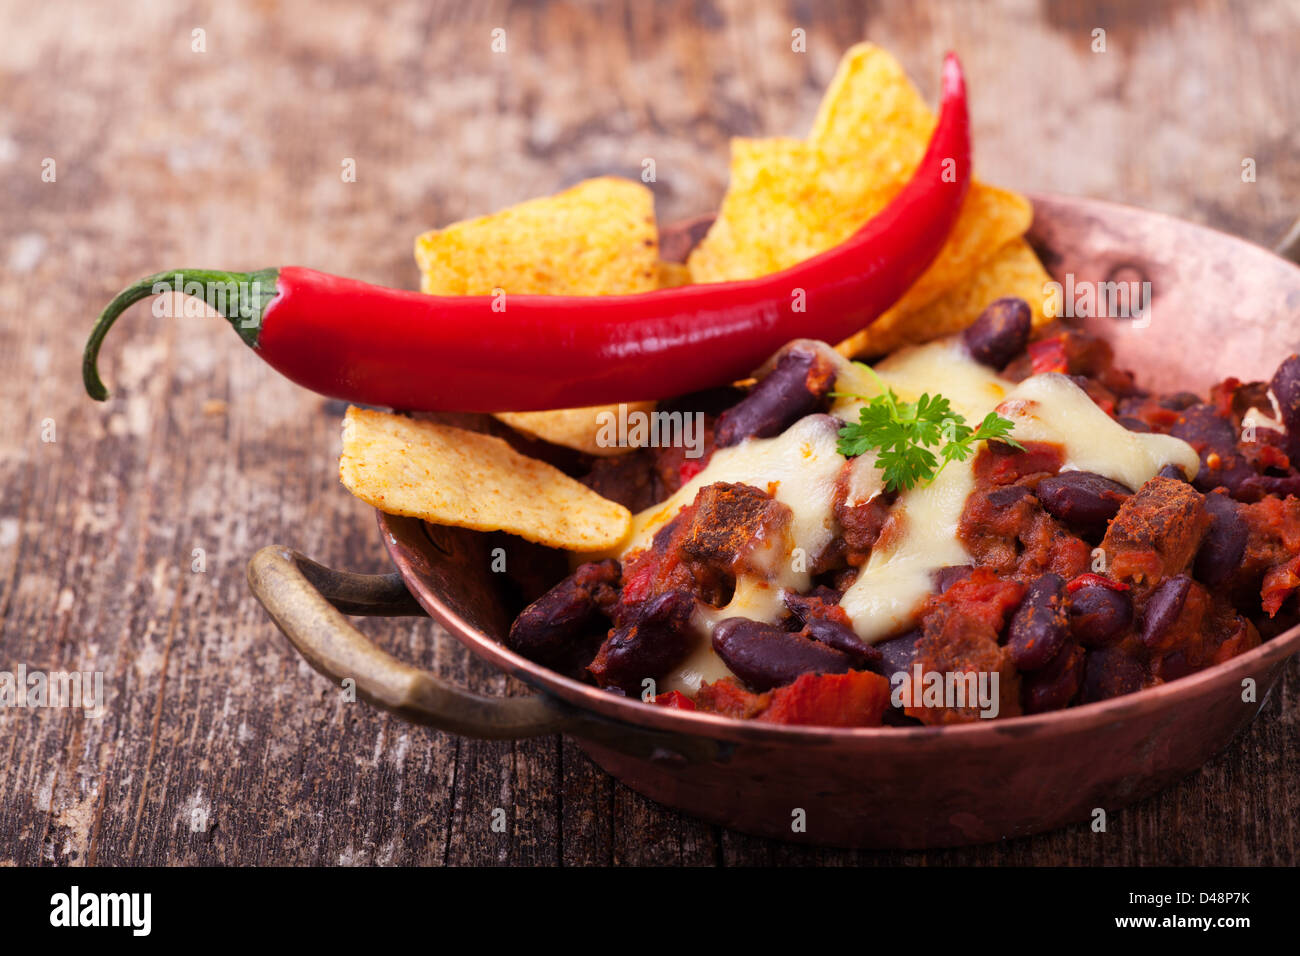 chili con carne in a bowl Stock Photo